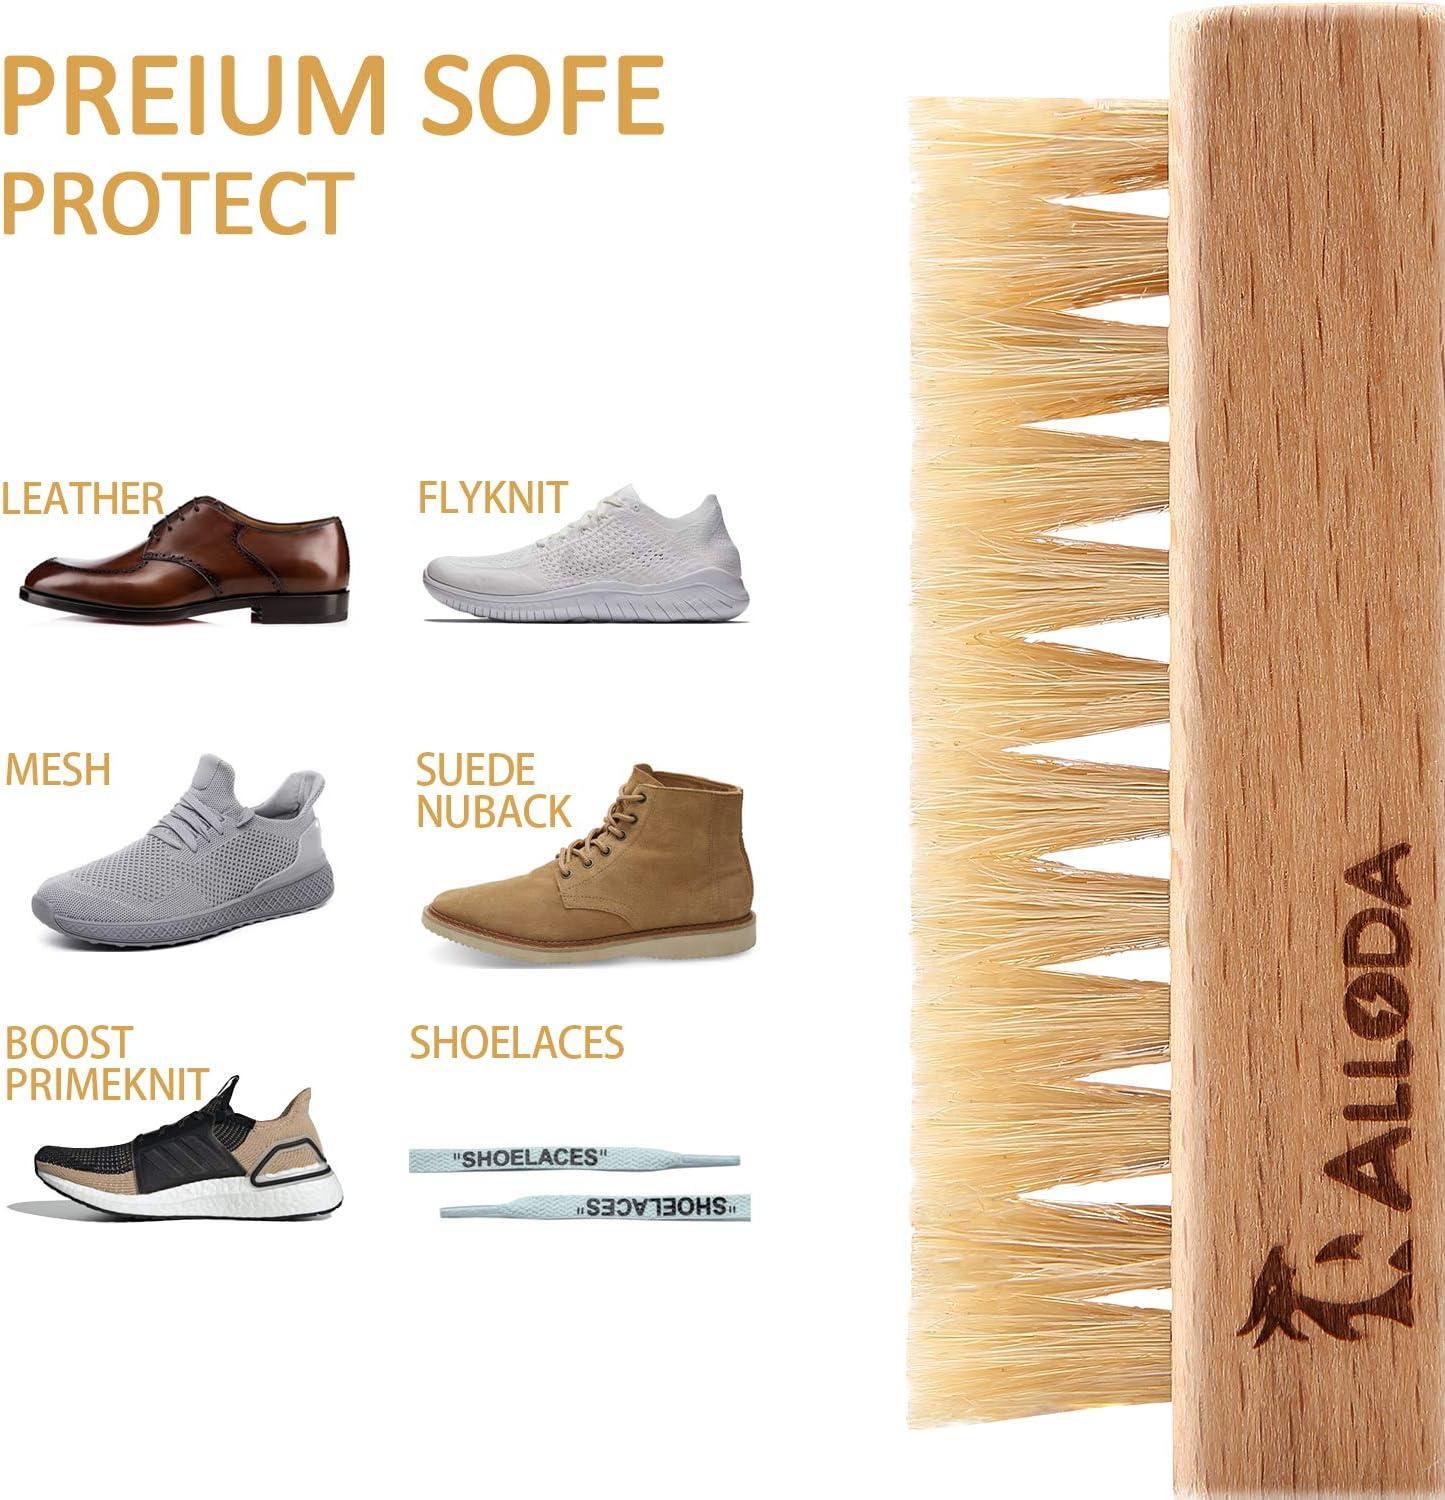 Buy Shoe Cleaner+Shoe whitener, Sneaker Cleaner, Brush-Shoe Cleaning Kit,  Alloda (white) at